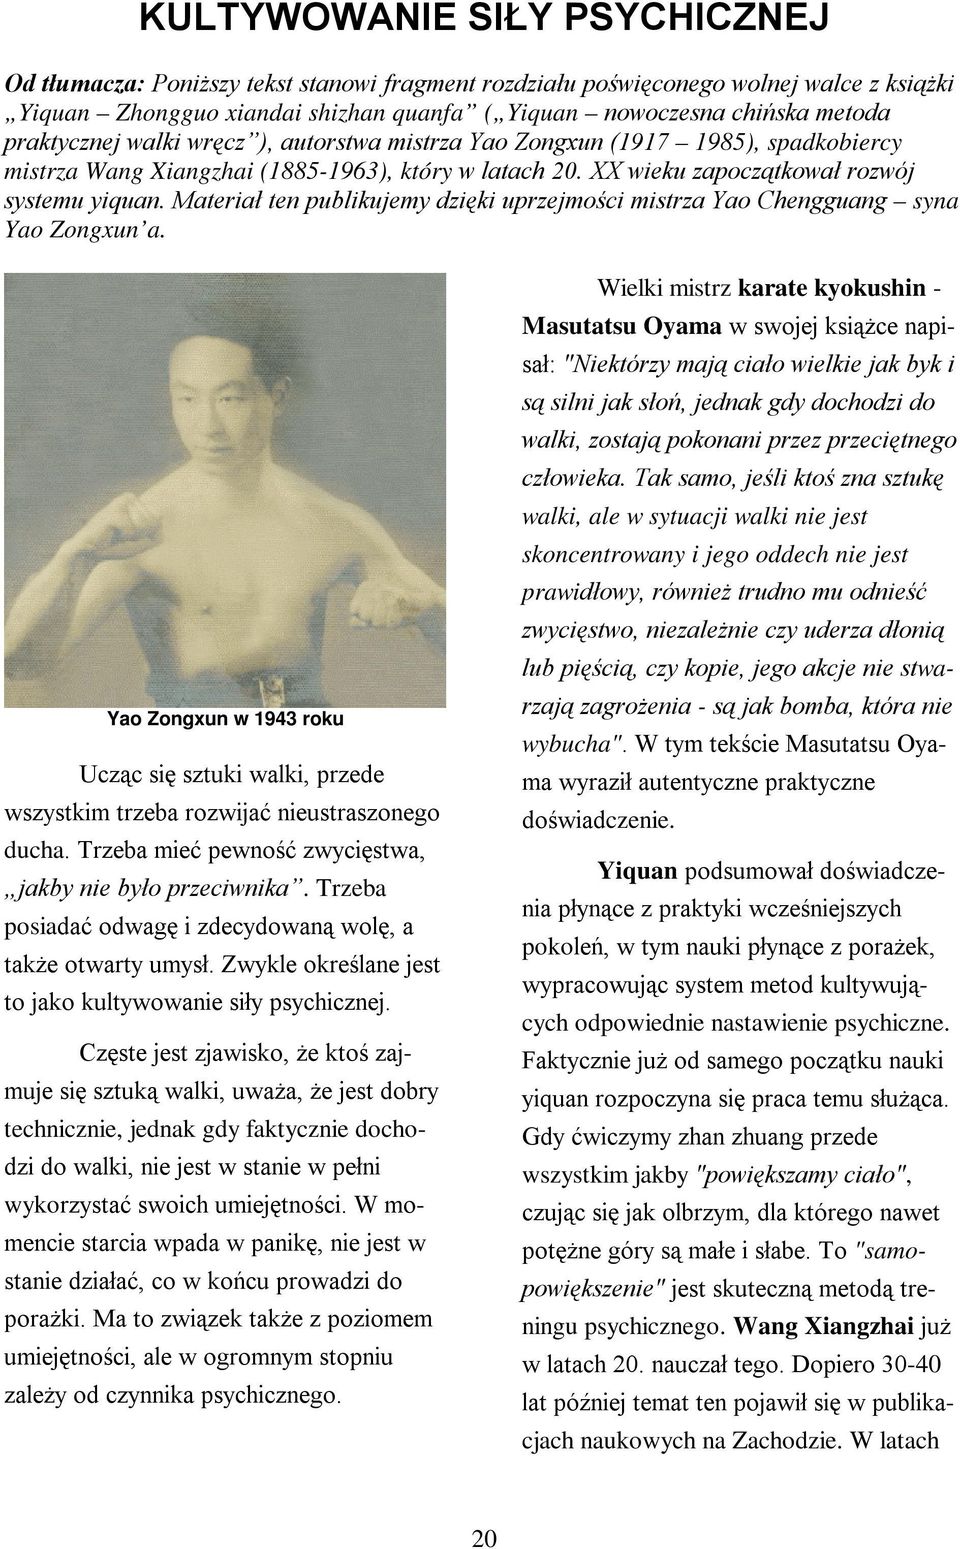 Materiał ten publikujemy dzięki uprzejmości mistrza Yao Chengguang syna Yao Zongxun a. Yao Zongxun w 1943 roku Ucząc się sztuki walki, przede wszystkim trzeba rozwijać nieustraszonego ducha.